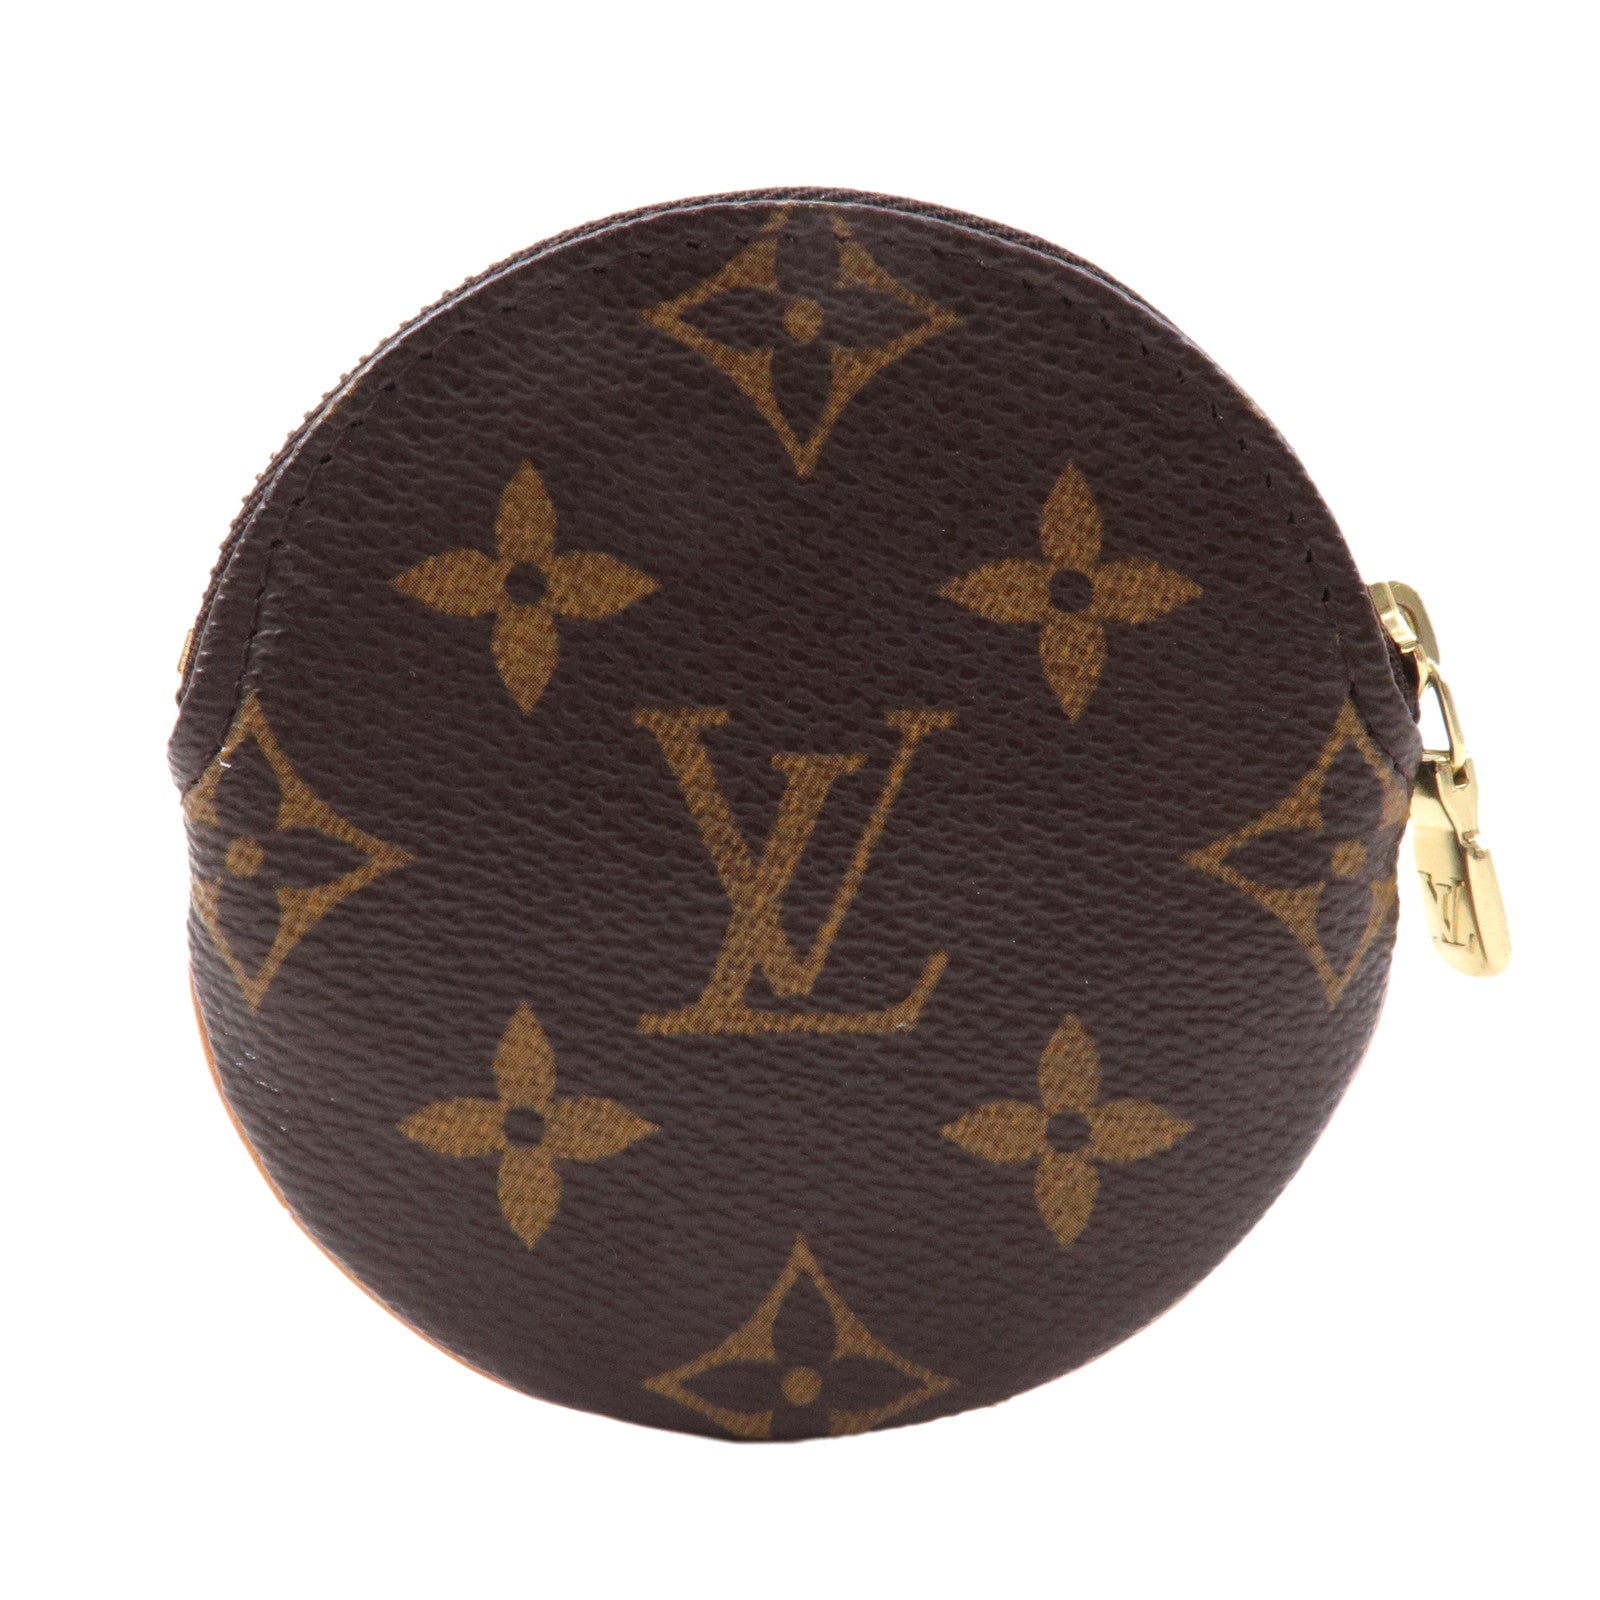 Pouch - Porte - Vuitton - Monnaie - Louis - ep_vintage luxury